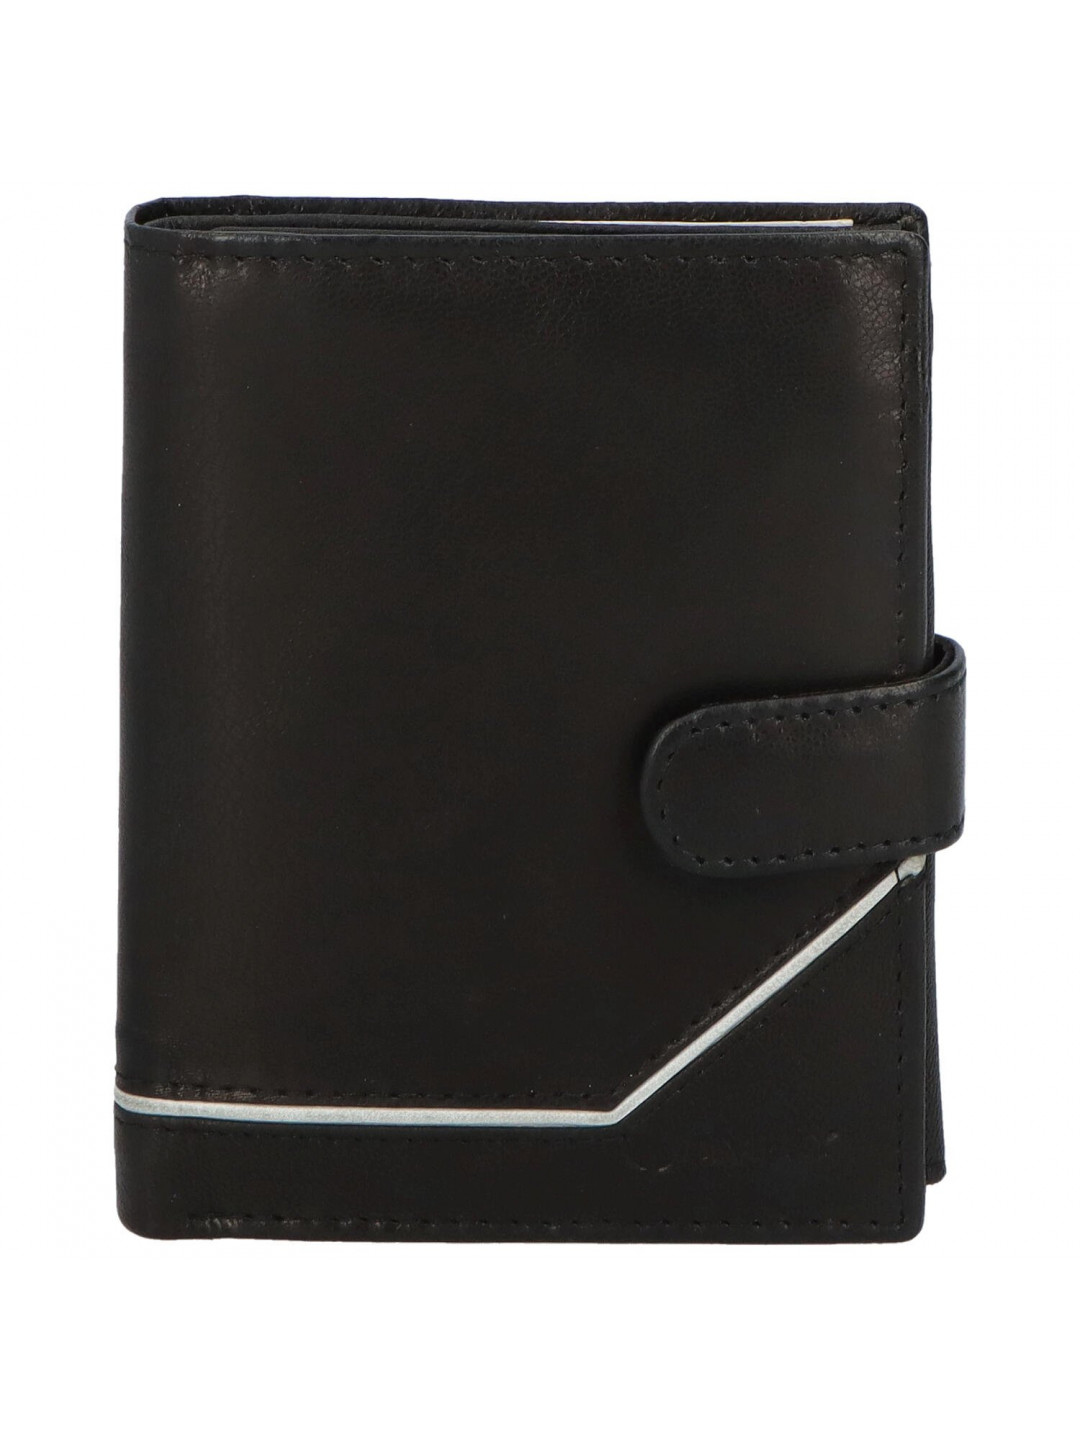 Trendová pánská kožená peněženka Figo černá – bílá